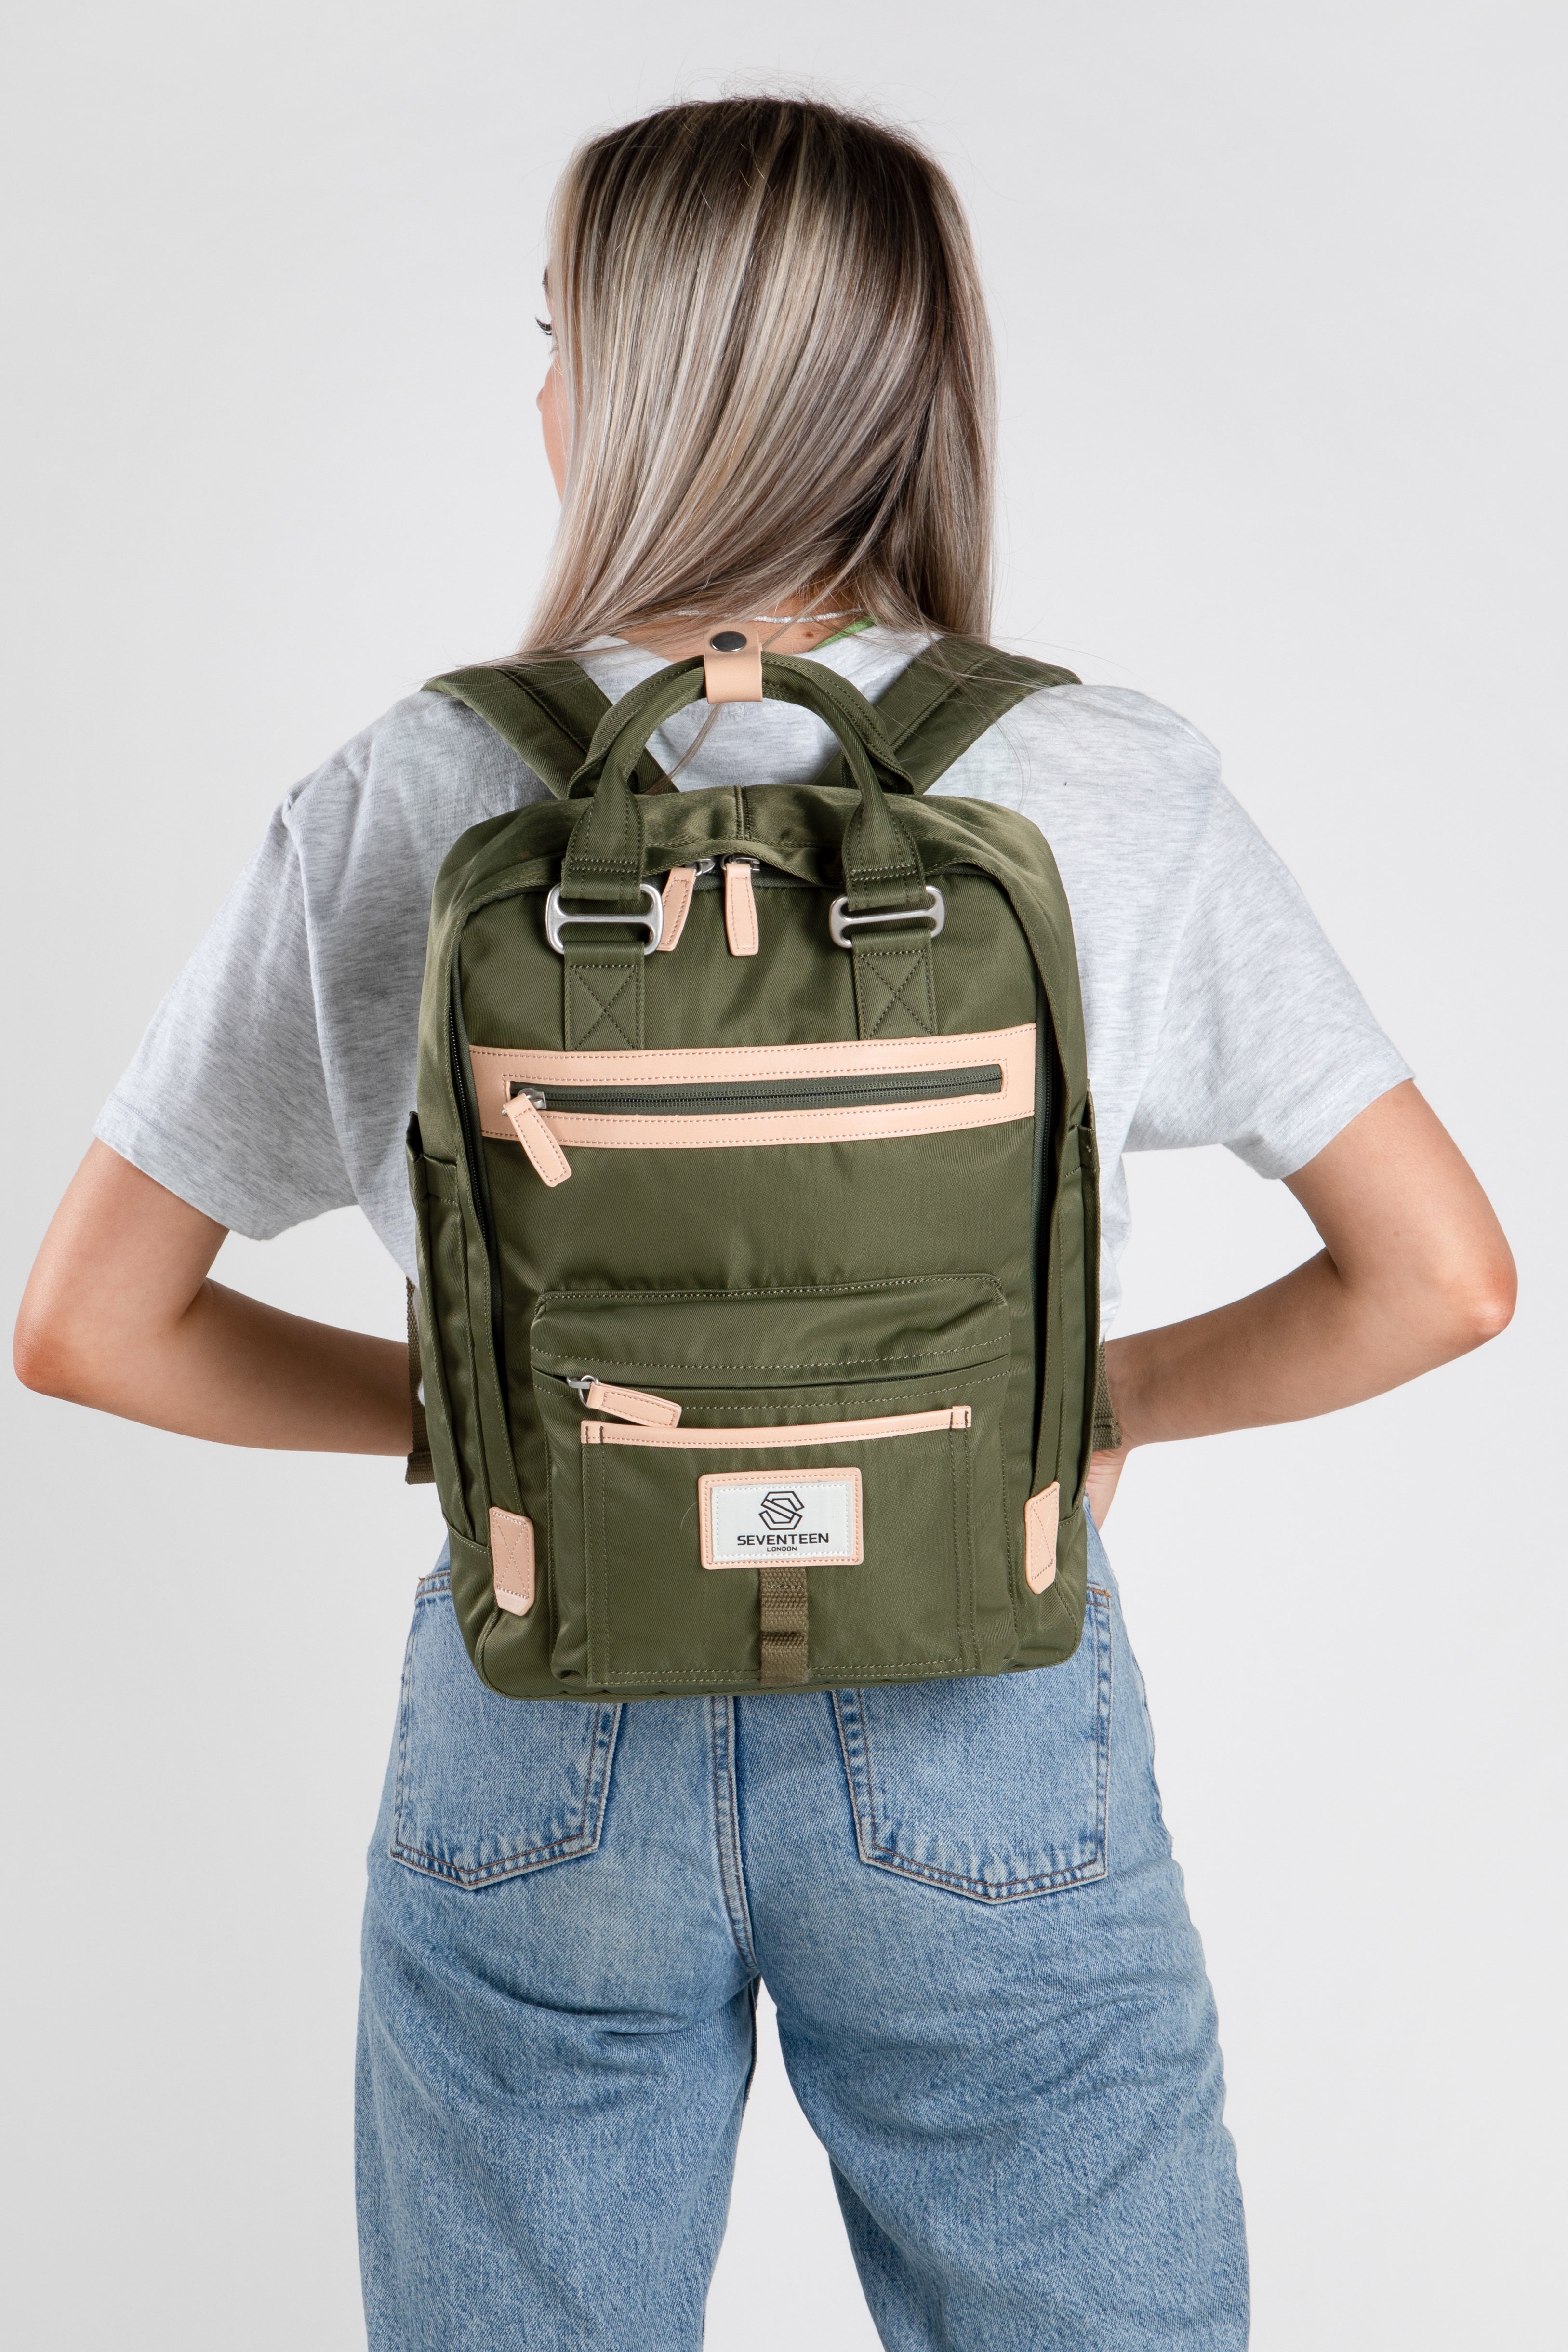 Wimbledon Backpack - Army Green - Seventeen London